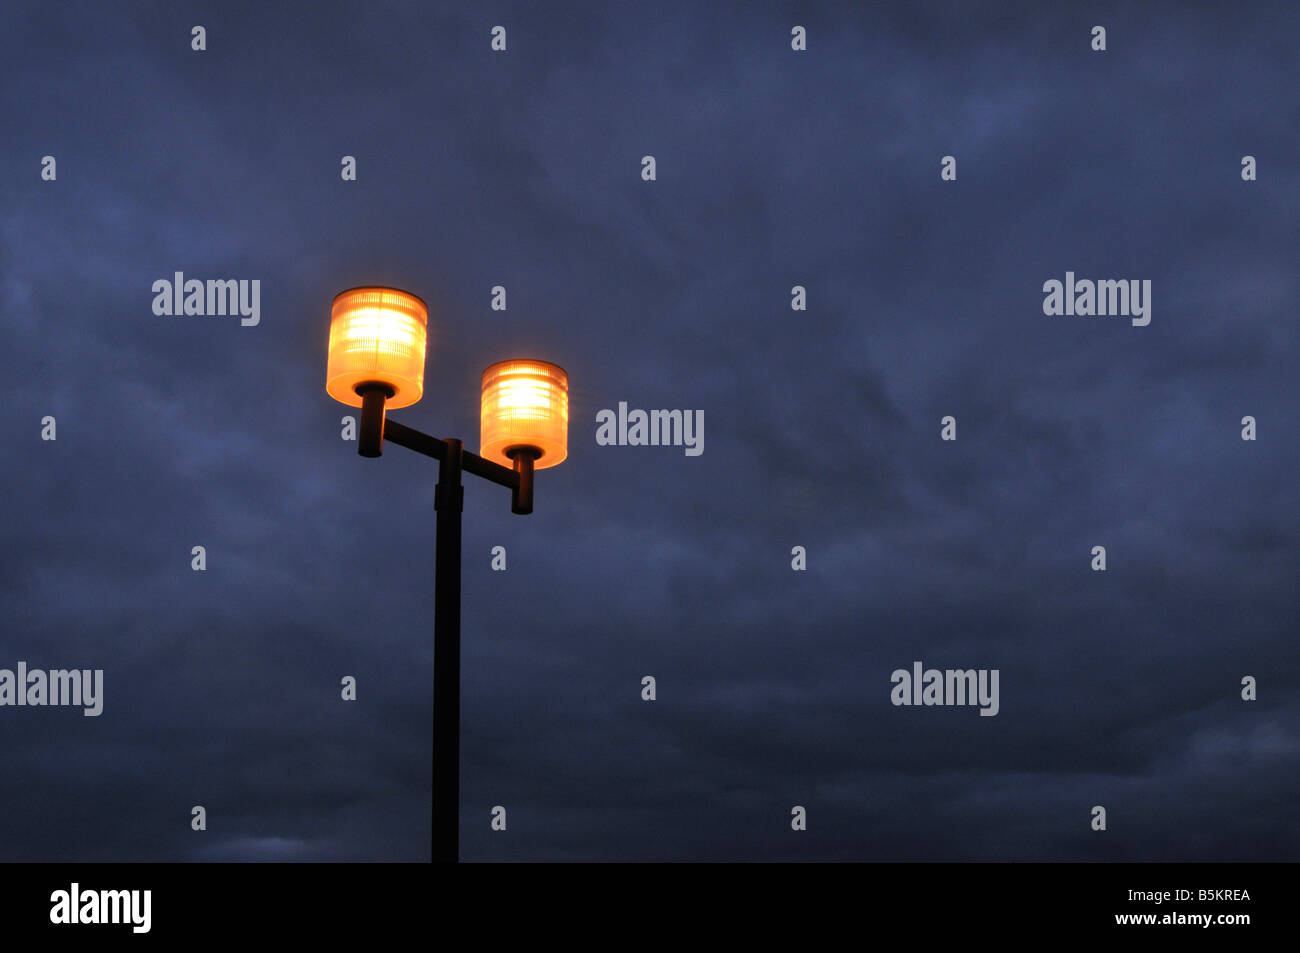 Drammatica eerie parcheggio lampioni al crepuscolo contro blu grigio nuvoloso cielo notturno Foto Stock